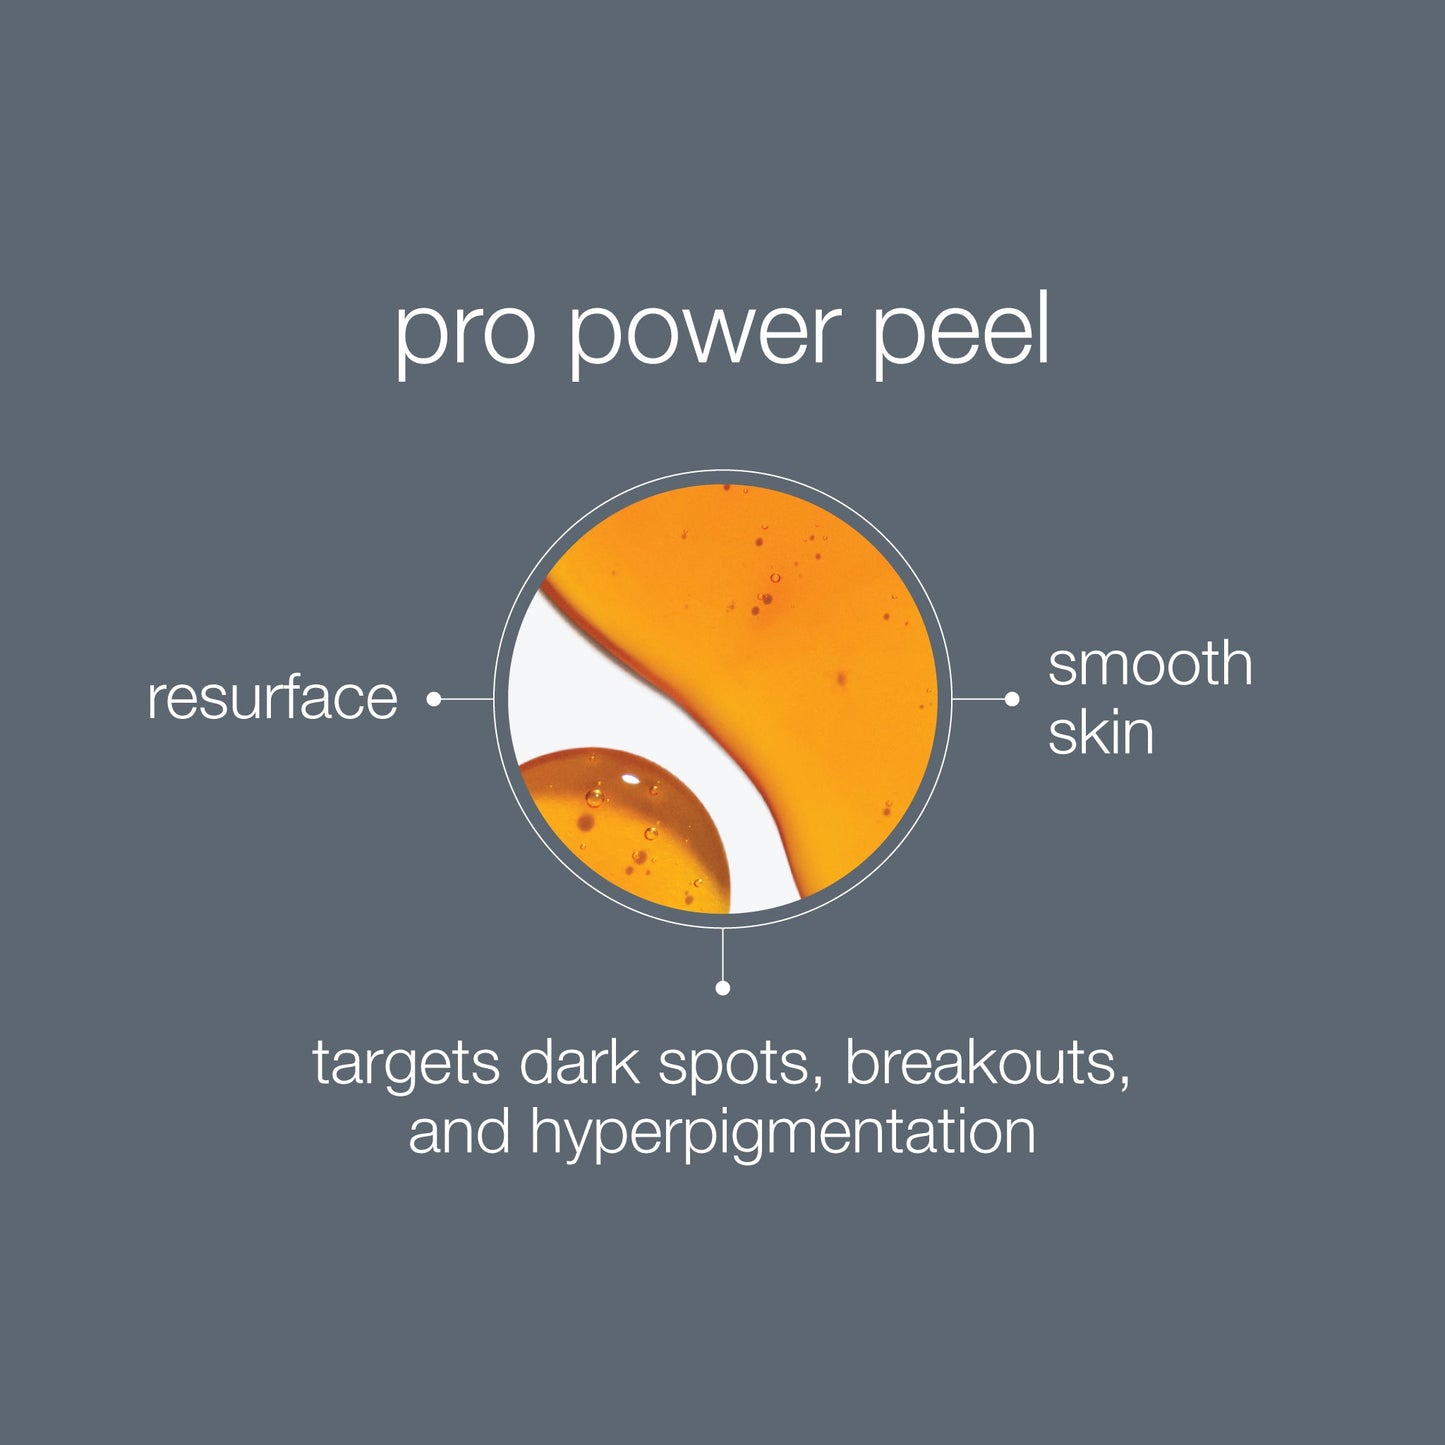 pro power peel benefits